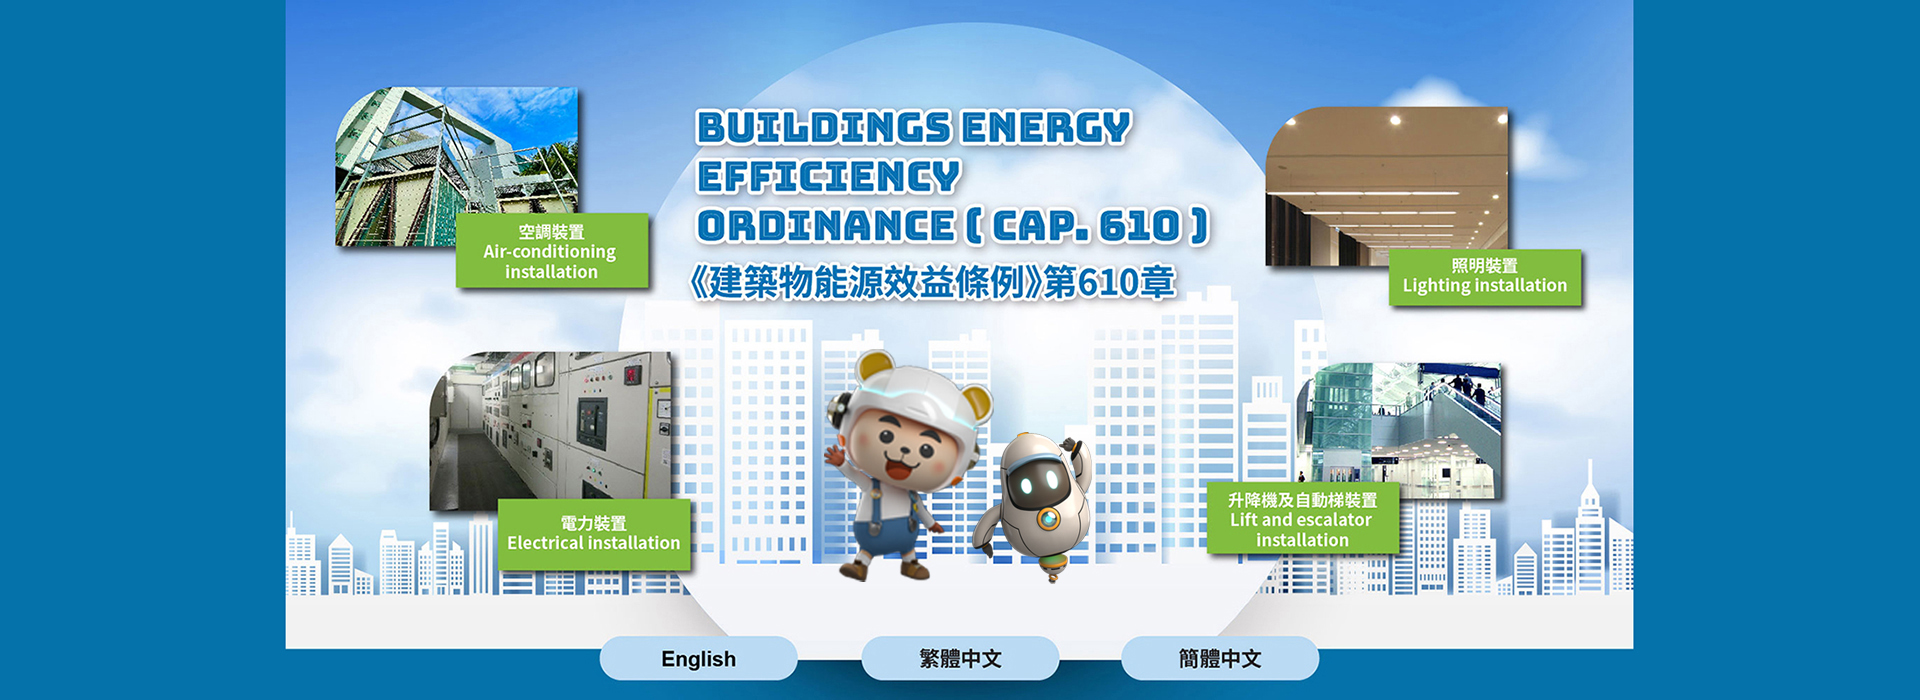 Buildings Energy Efficiency Ordinance (Cap.610)